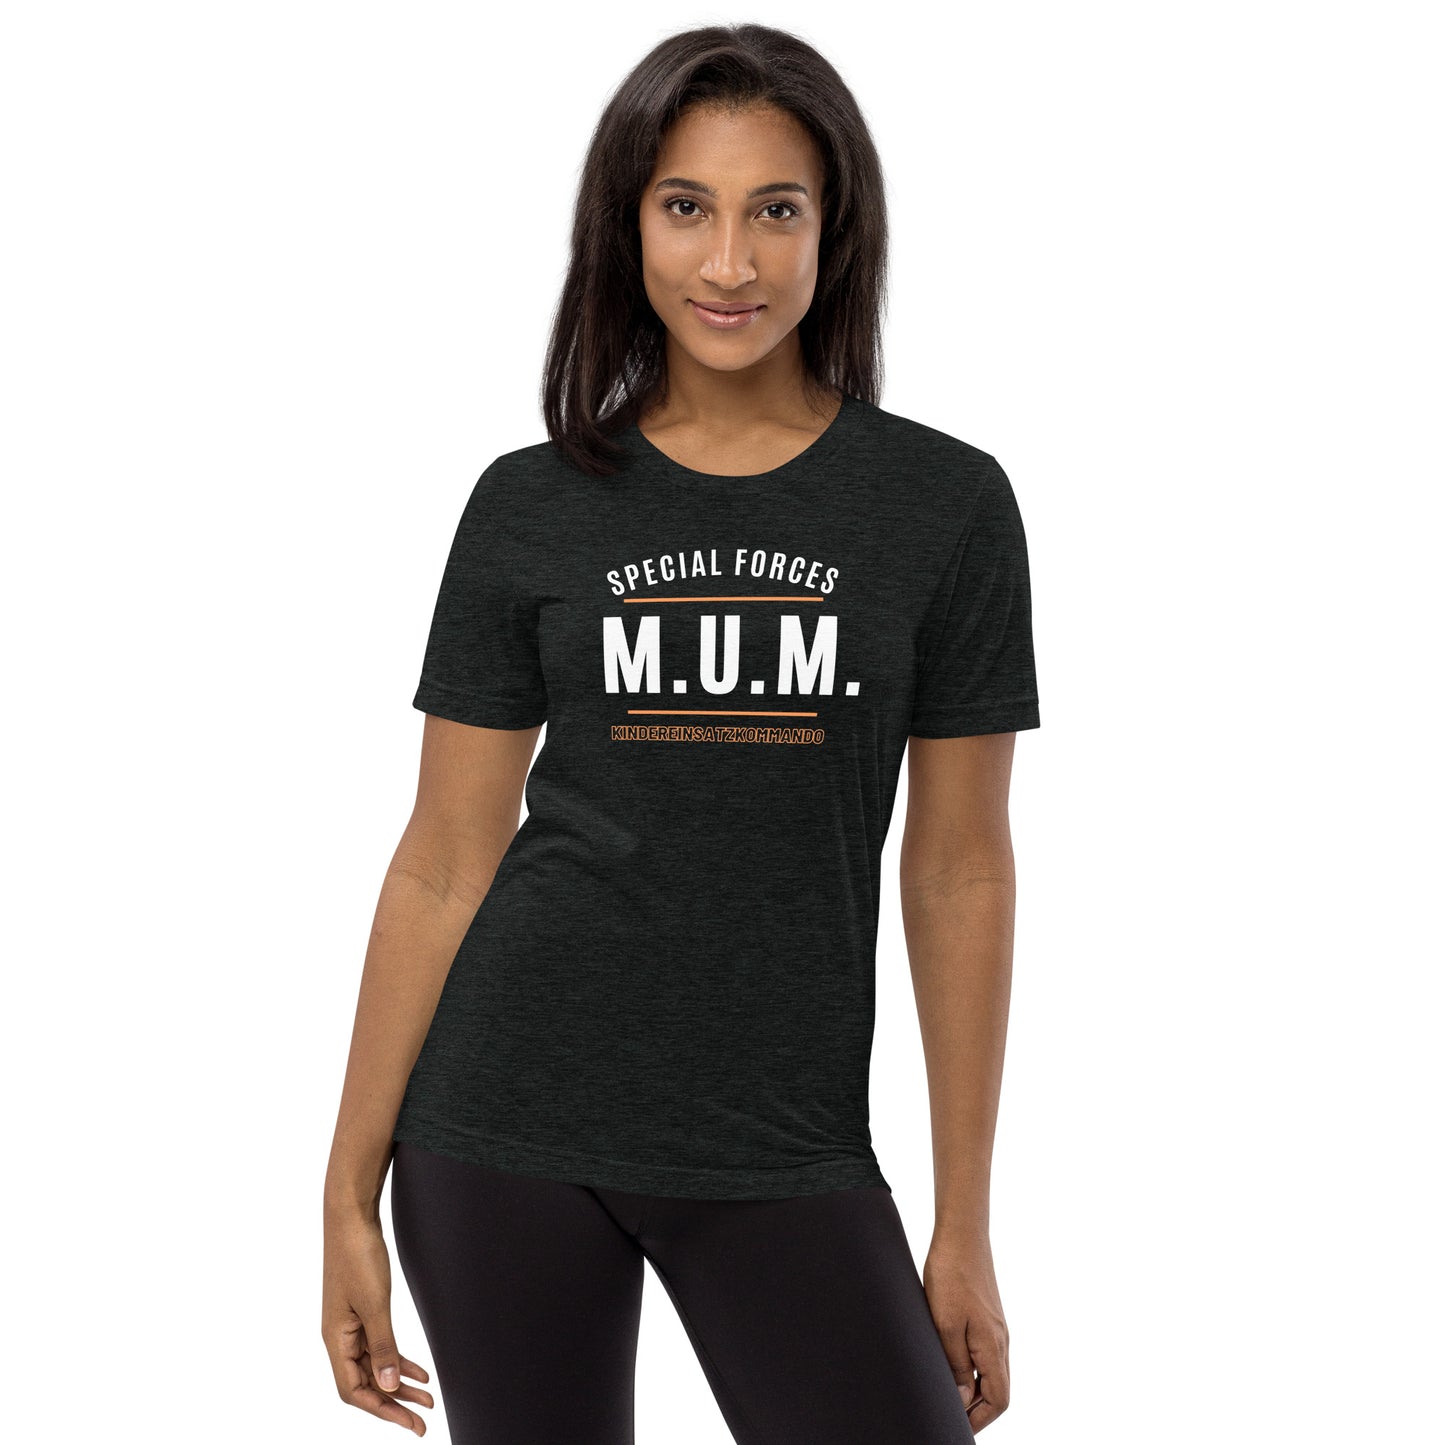 M.U.M. - Statement auf klassischem T-Shirt :-)